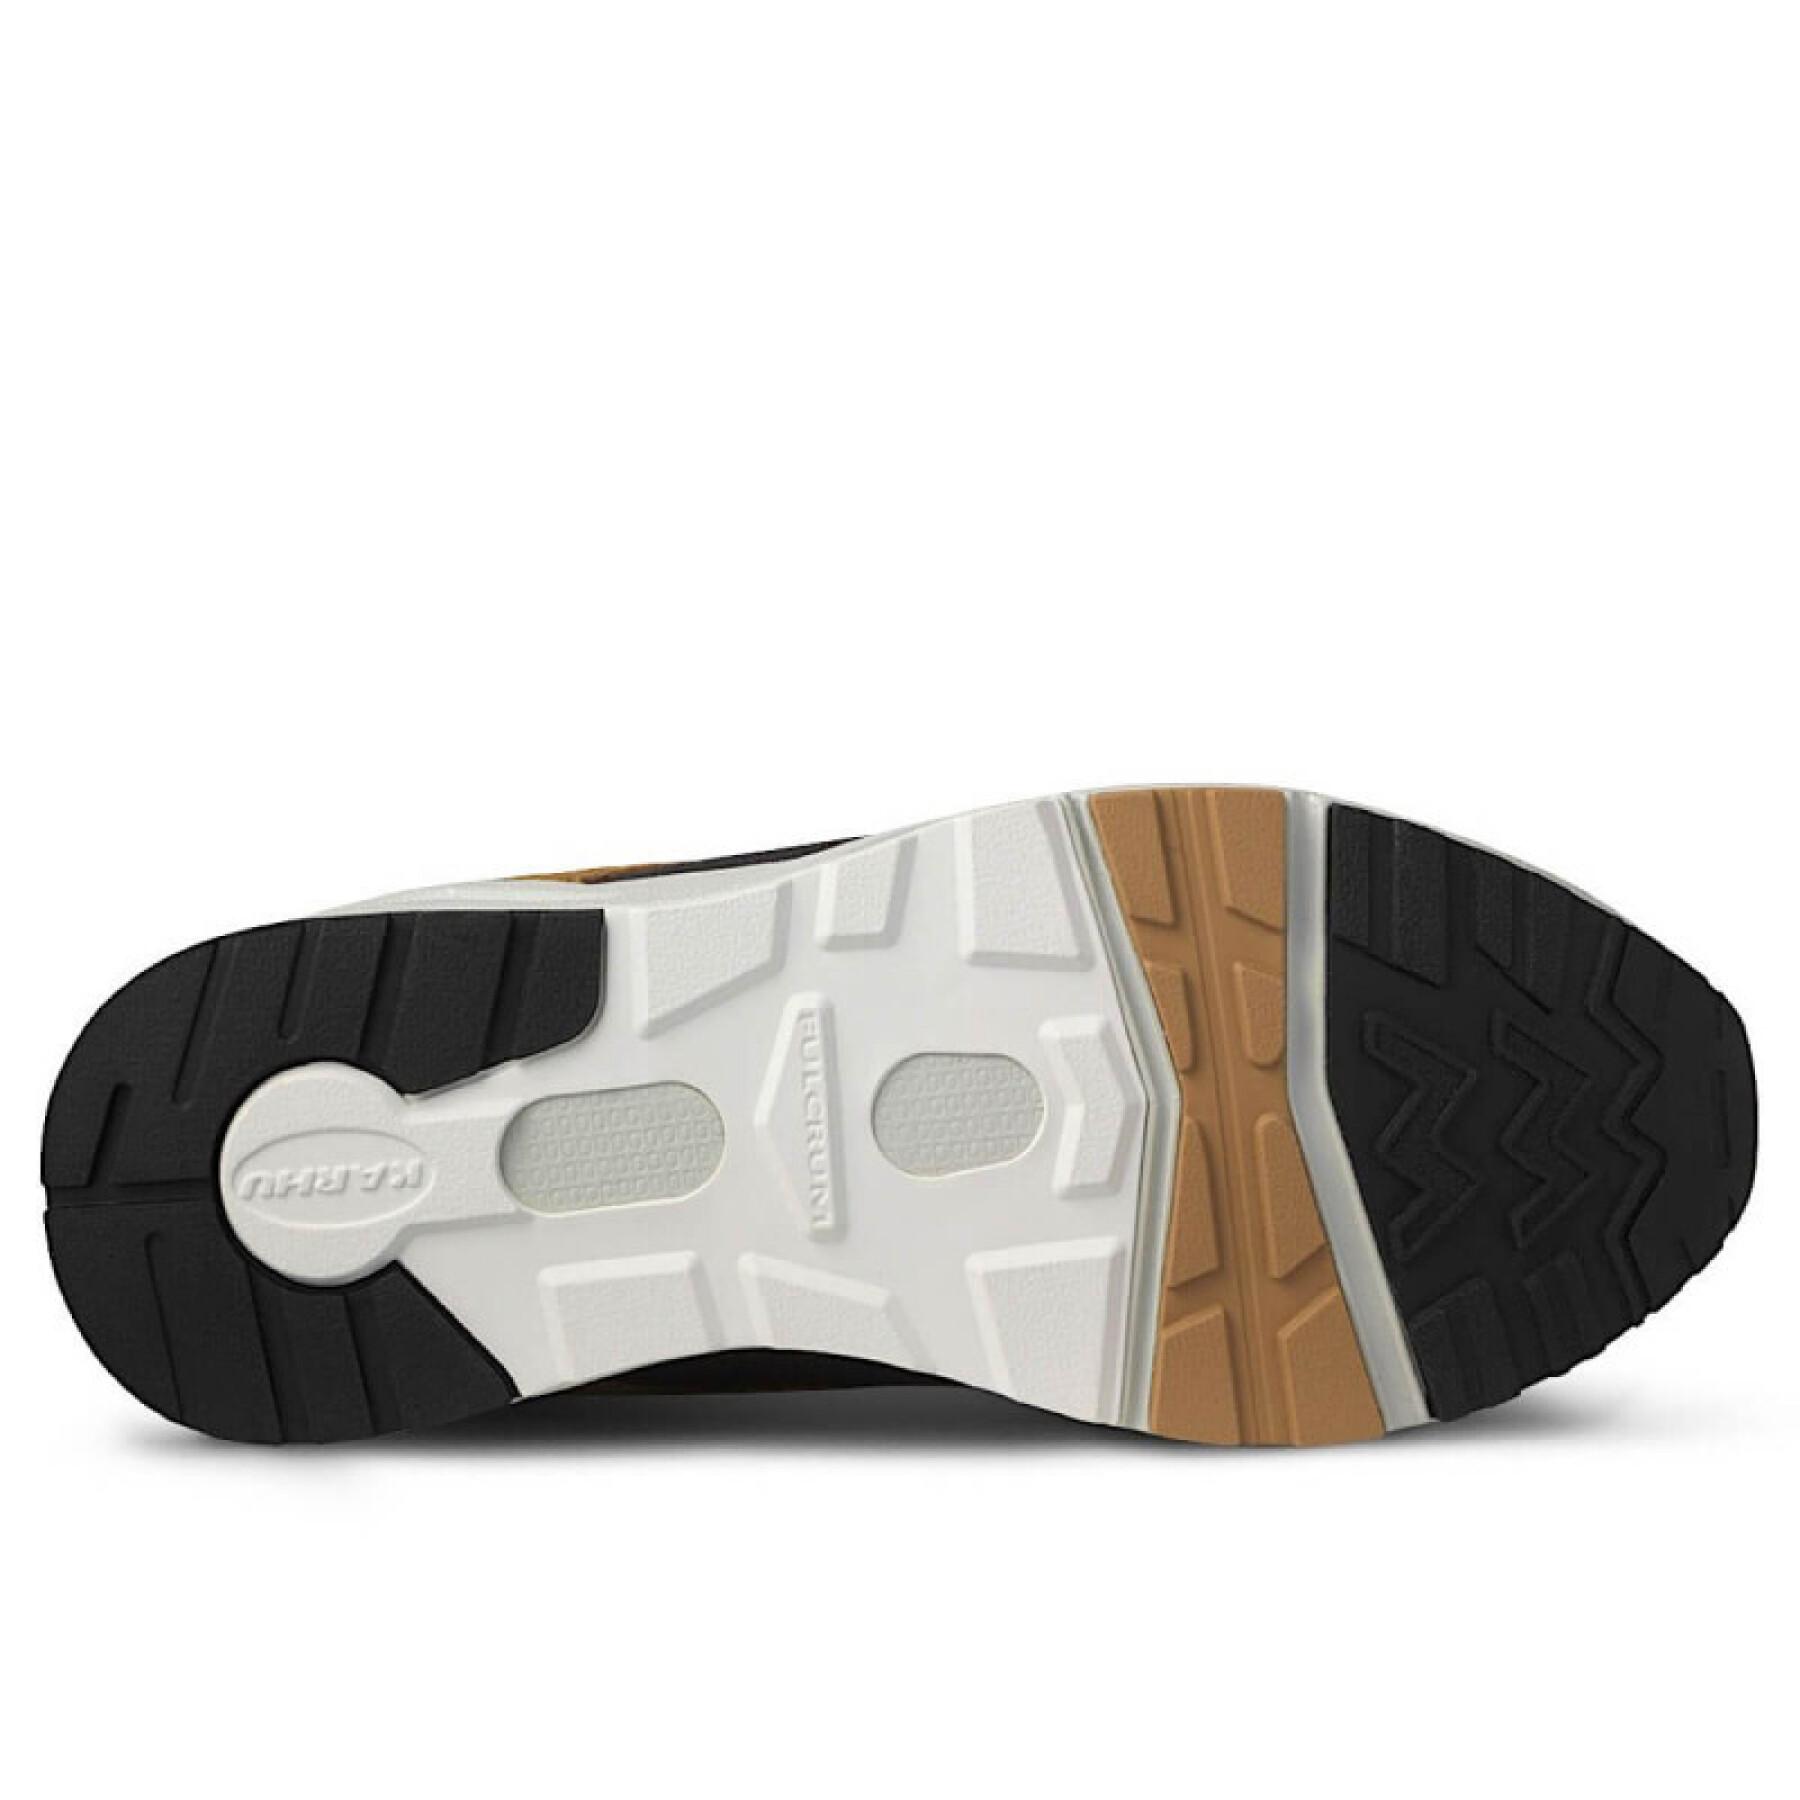 Sneakers Karhu Fusion 2.0 - F804131